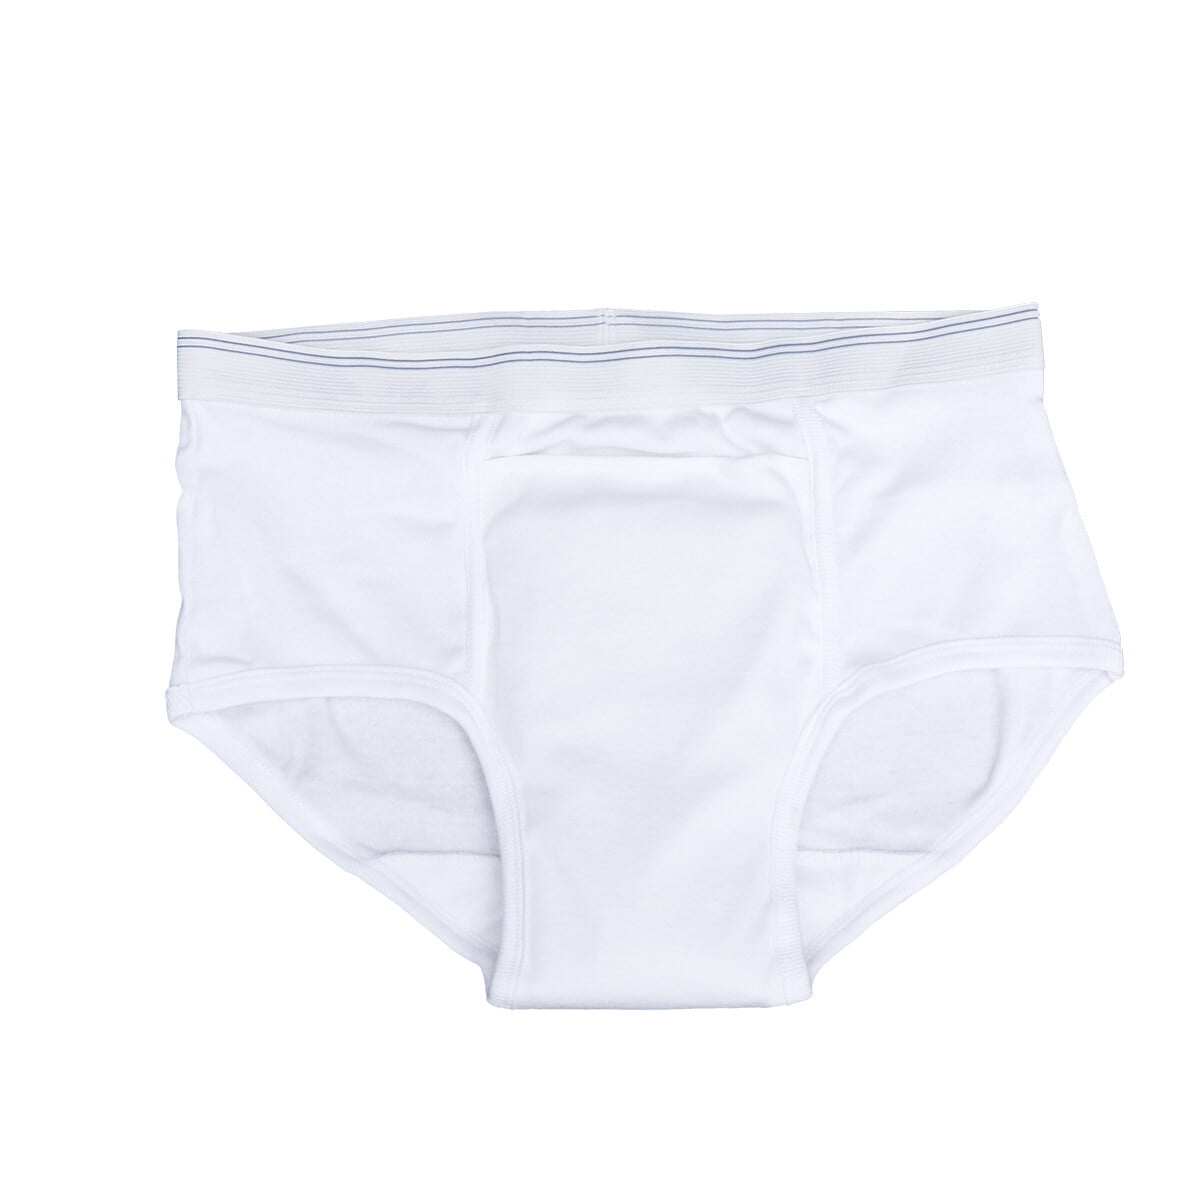  Presto Supreme Breathable Incontinence Underwear for